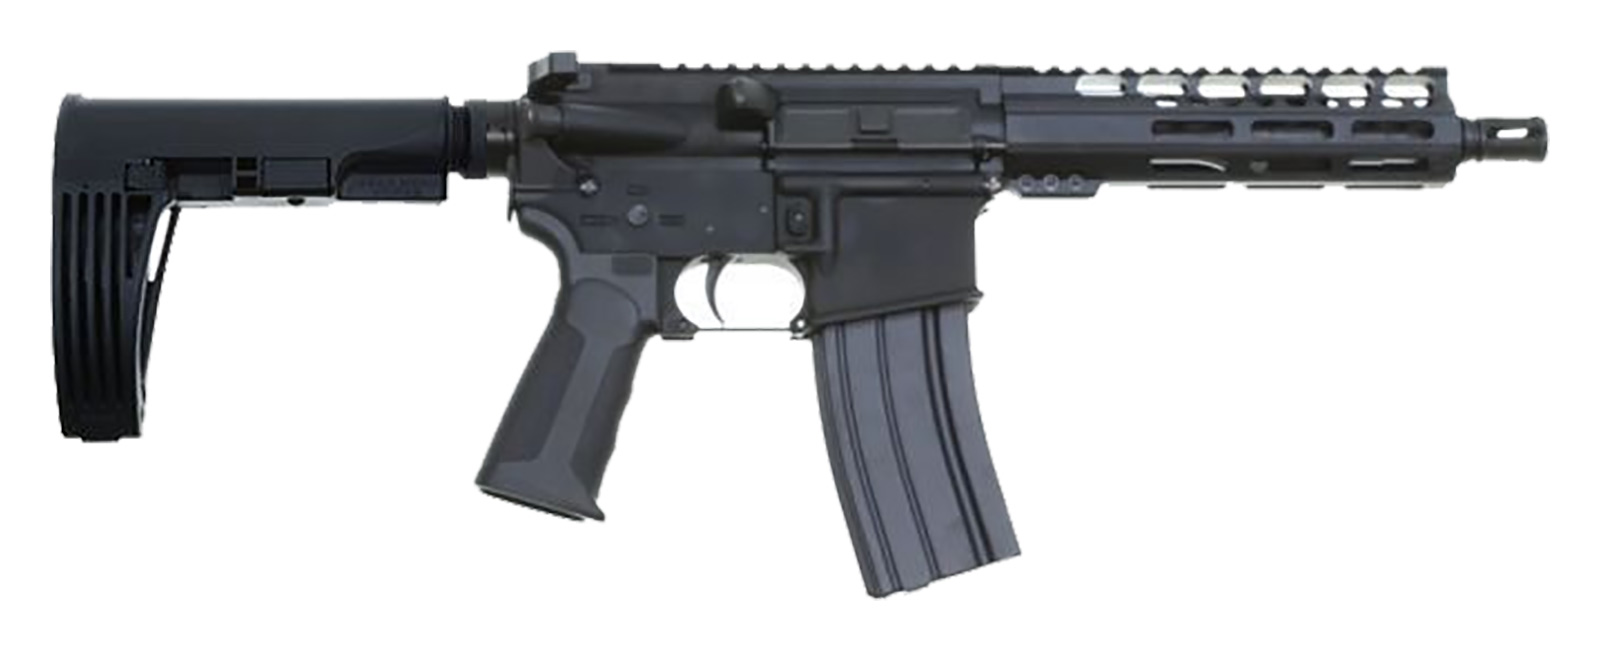 cbc-ps2-forged-aluminum-ar-pistol-300blk-7-5″-barrel-7″-m-lok-rail-tailhook-mod-2